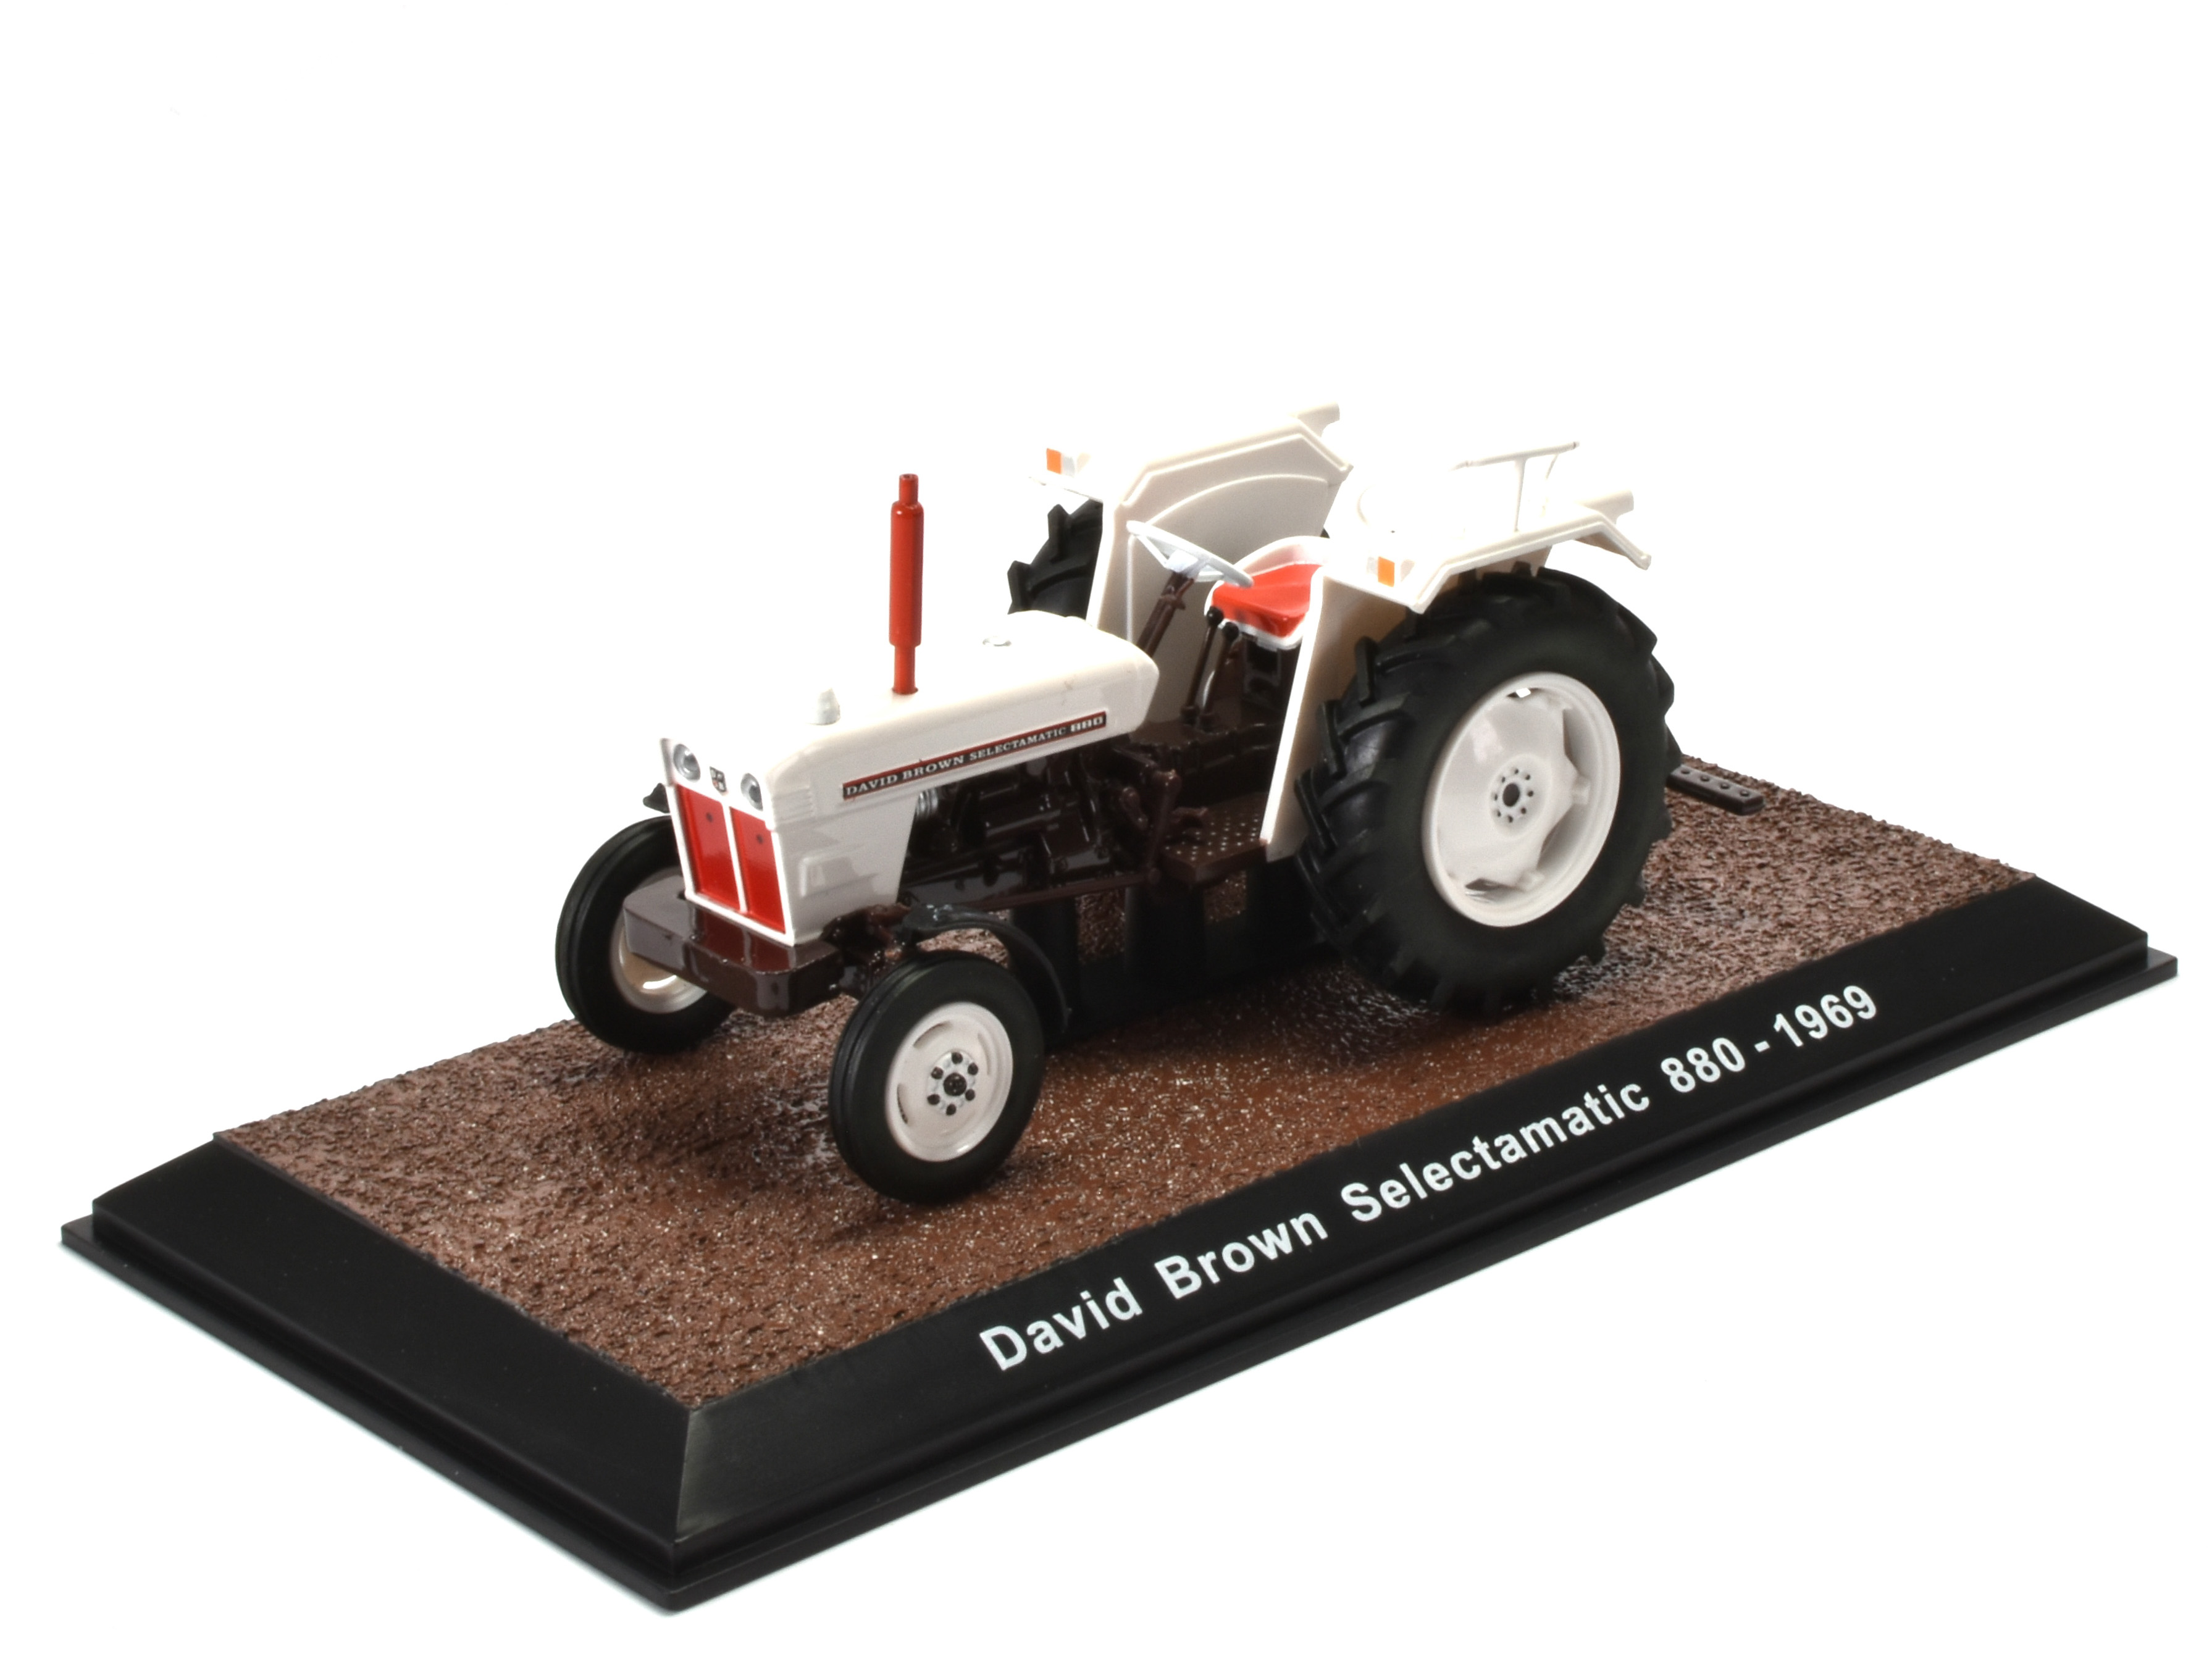 David Brown Selectamatic 880 - 1969 Tractor